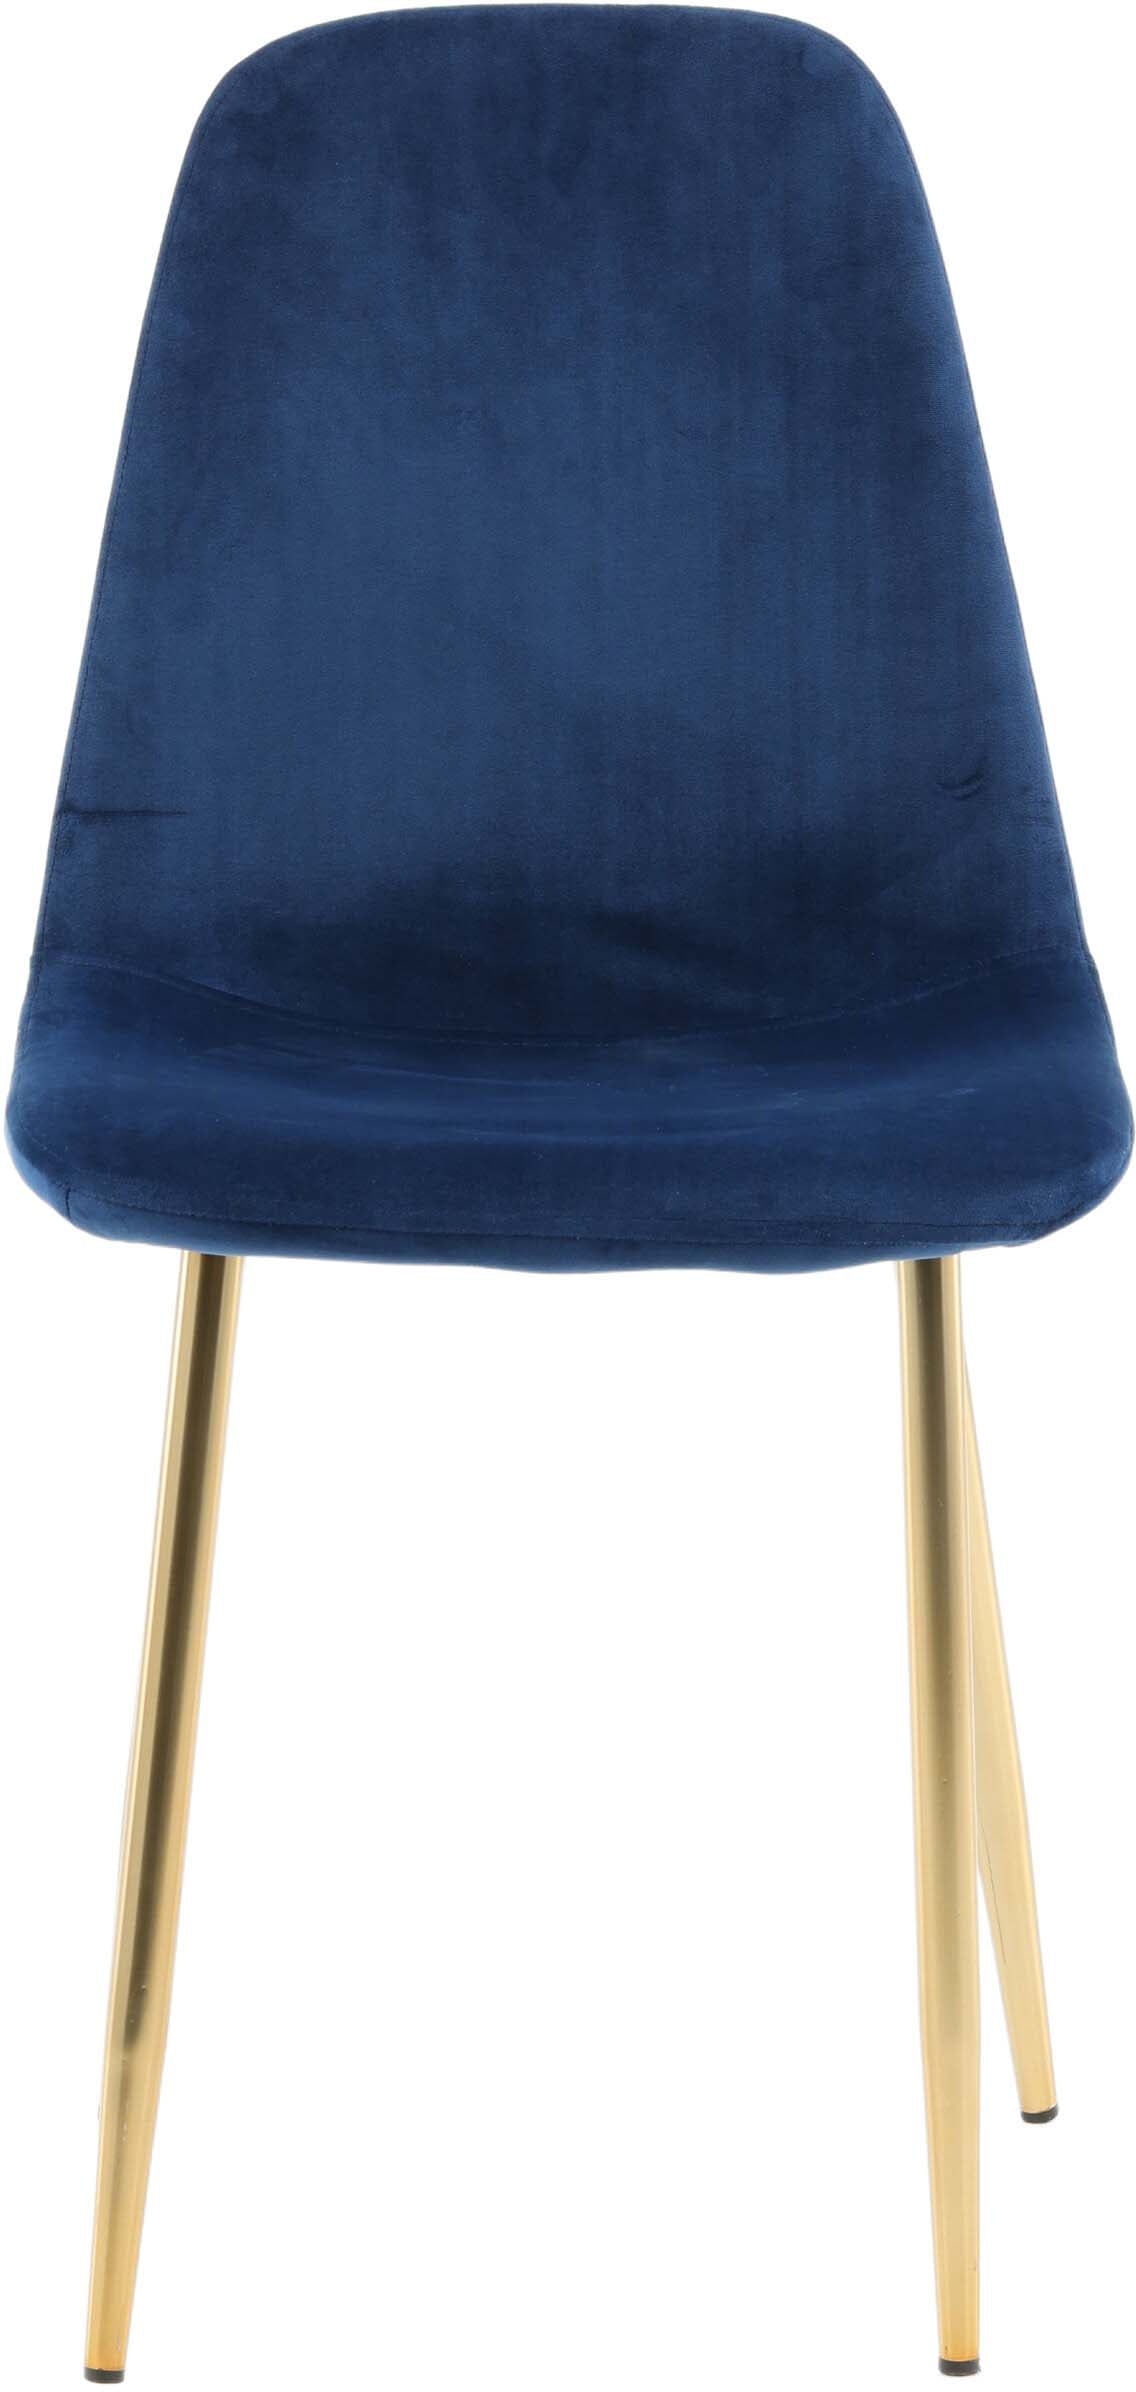 Polar Stuhl in Blau präsentiert im Onlineshop von KAQTU Design AG. Stuhl ist von Venture Home